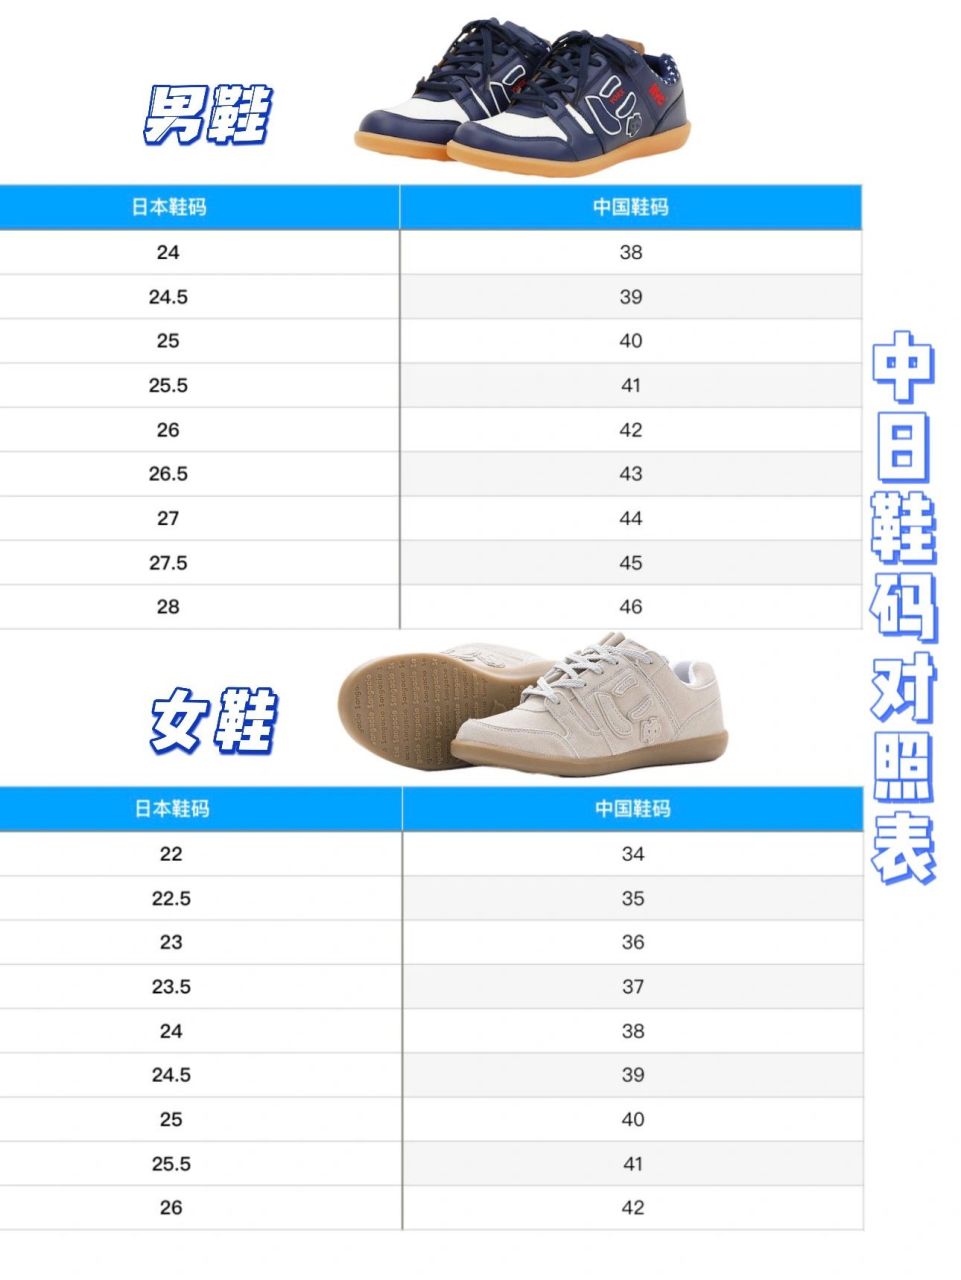 中国鞋码对照日本鞋码图片